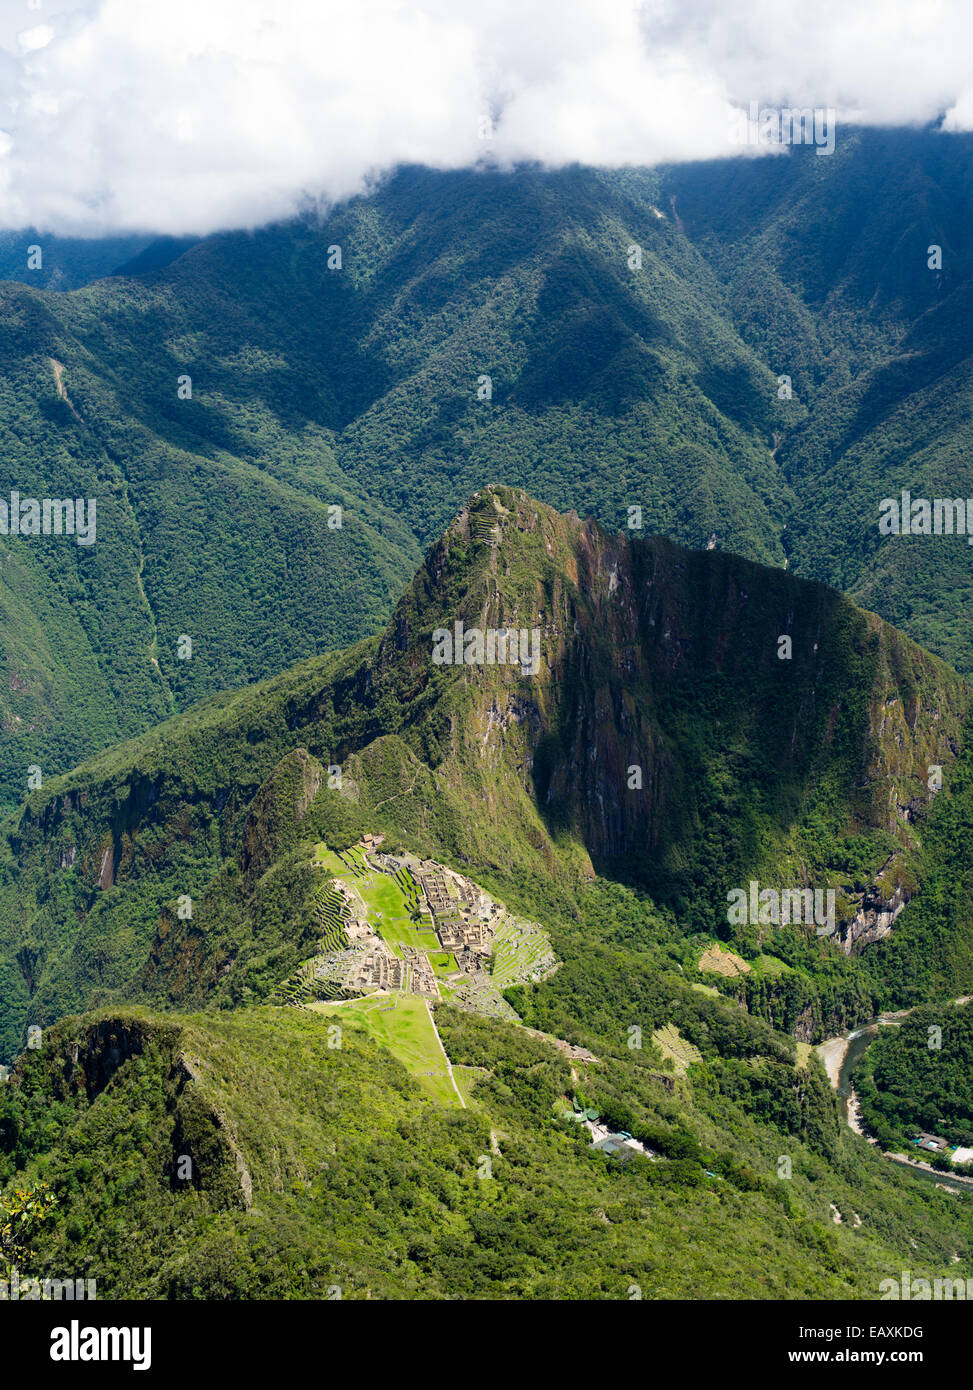 Las ruinas incas de Machu Picchu, fotografiado desde la cima de una montaña, cerca de Machu Picchu Aguas Calientes, Perú. Foto de stock